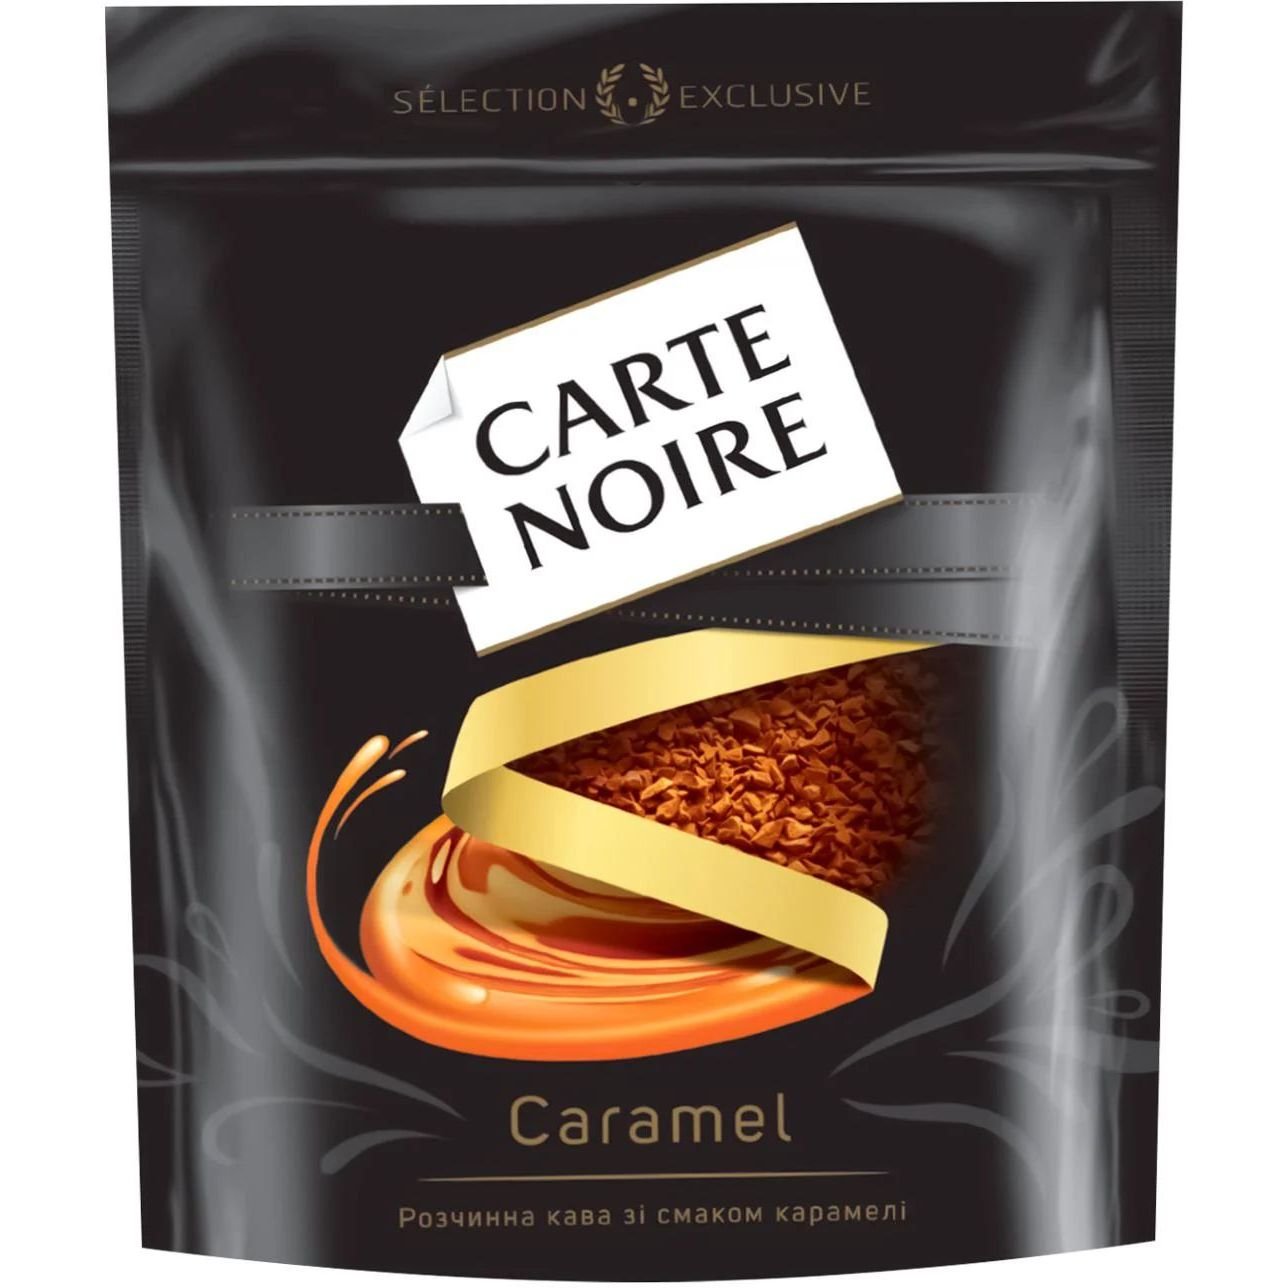 Кава розчинна Carte Noire Caramel, сублімована, 120 г (926067) - фото 1